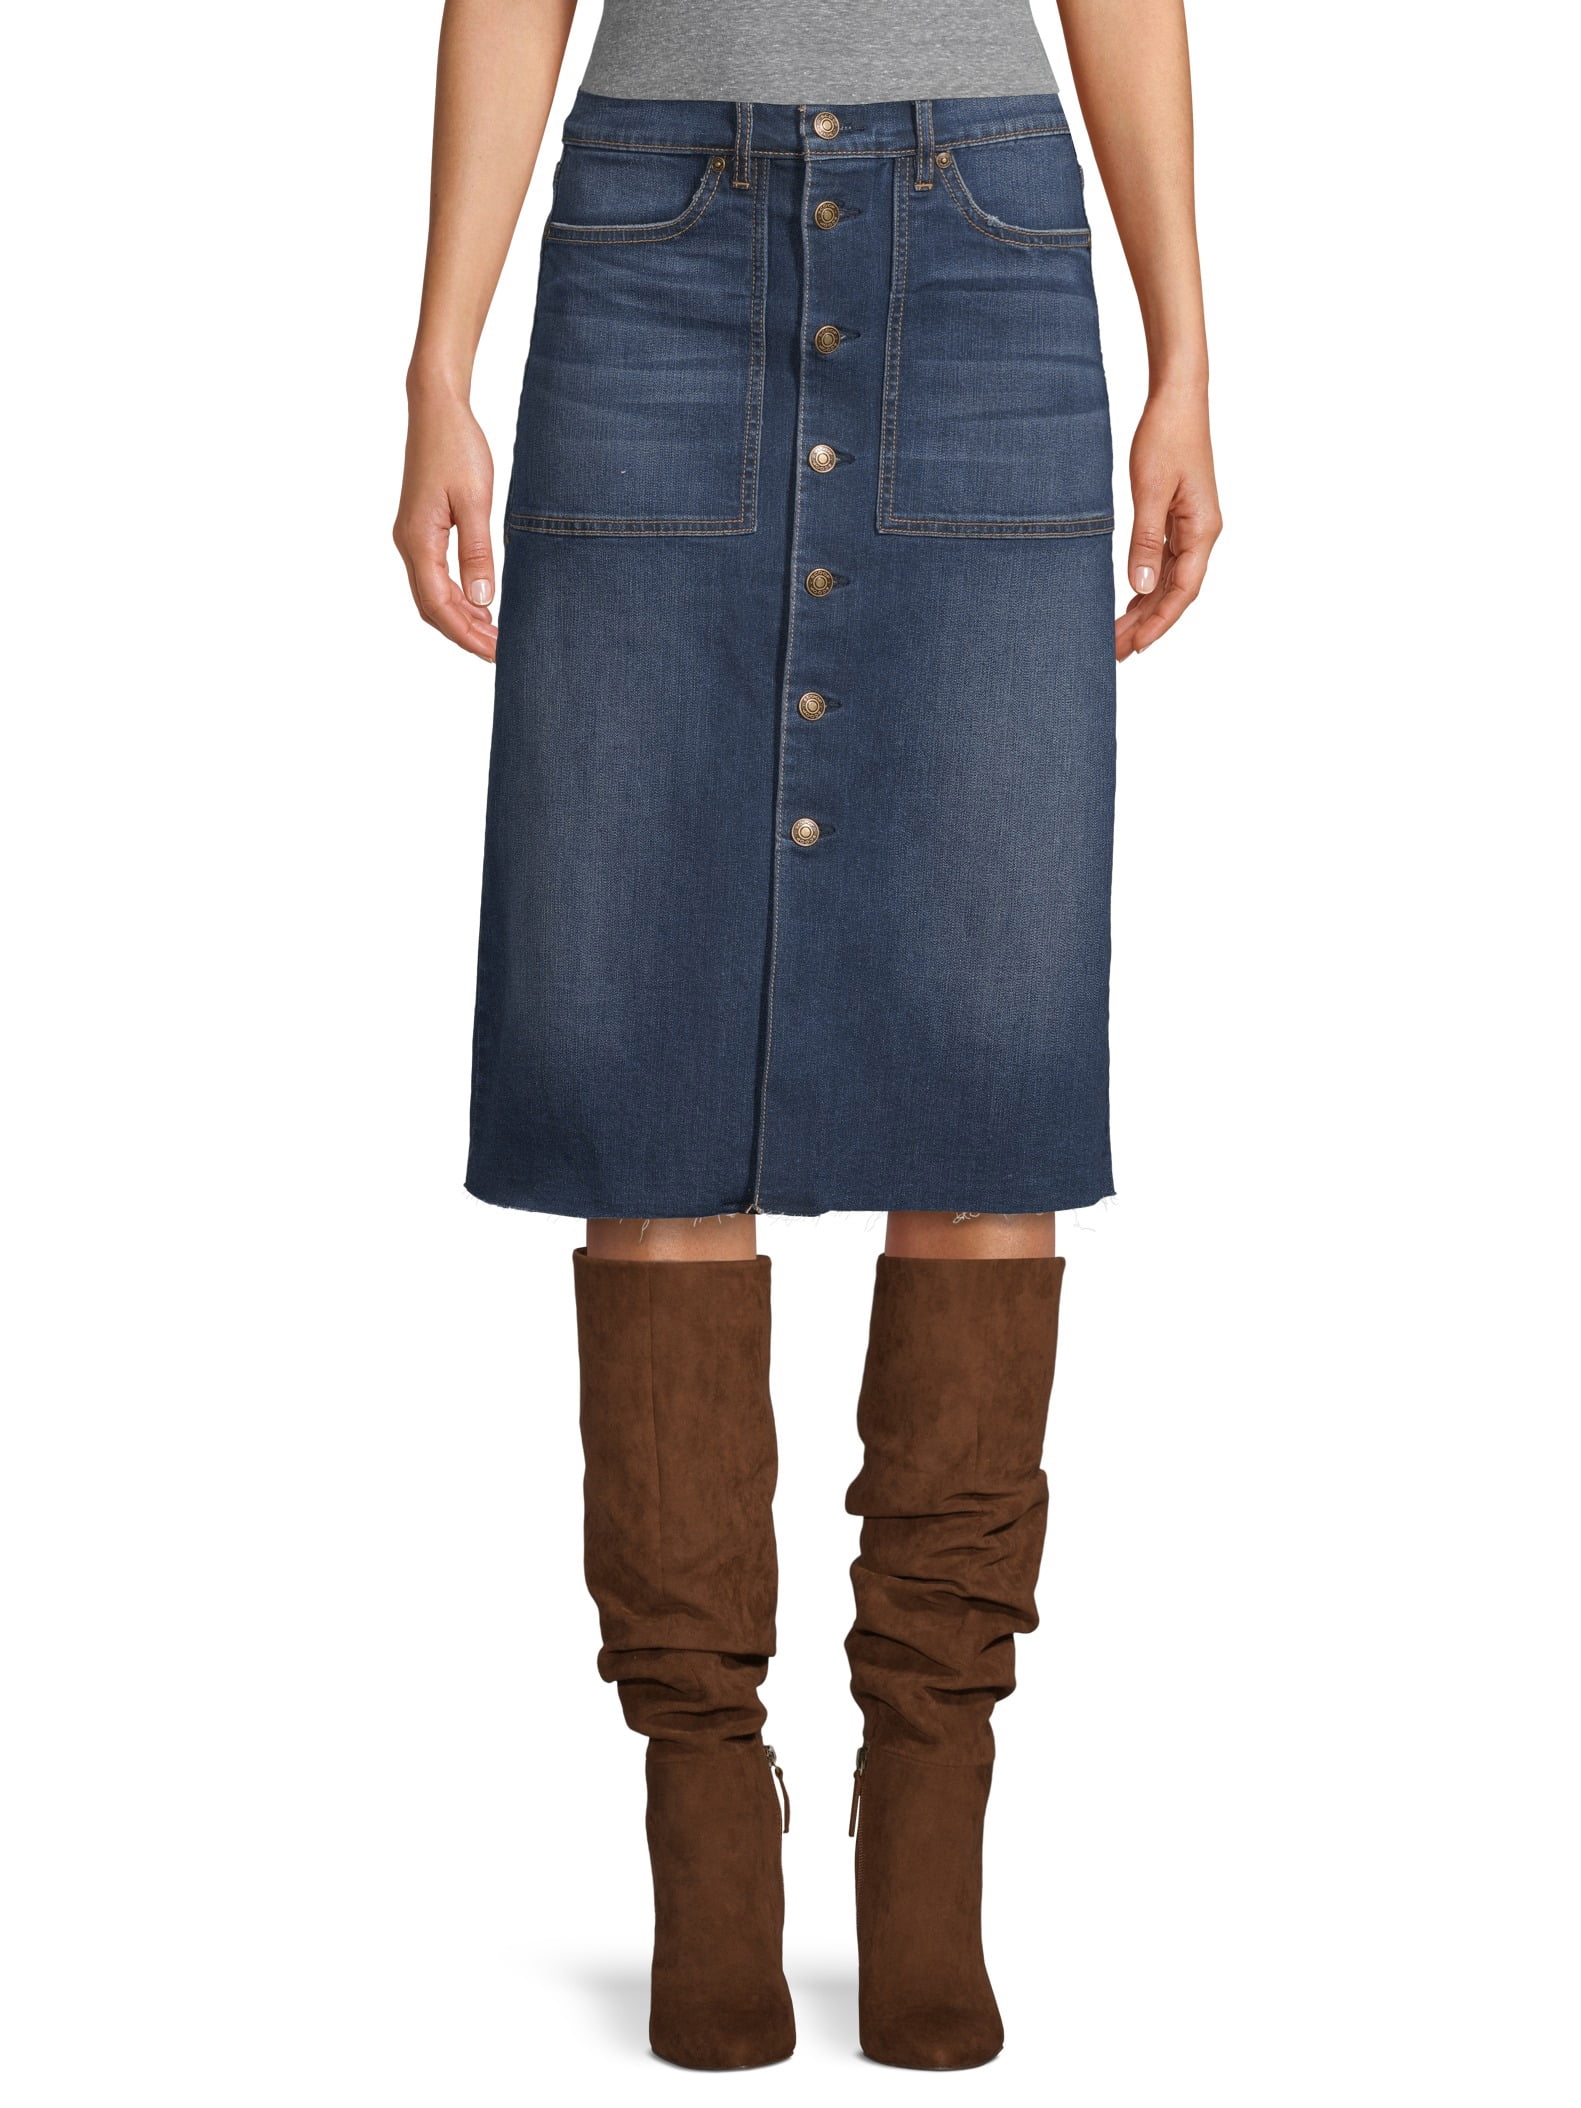 Scoop Boot Skirt Dark Wash Women's - Walmart.com